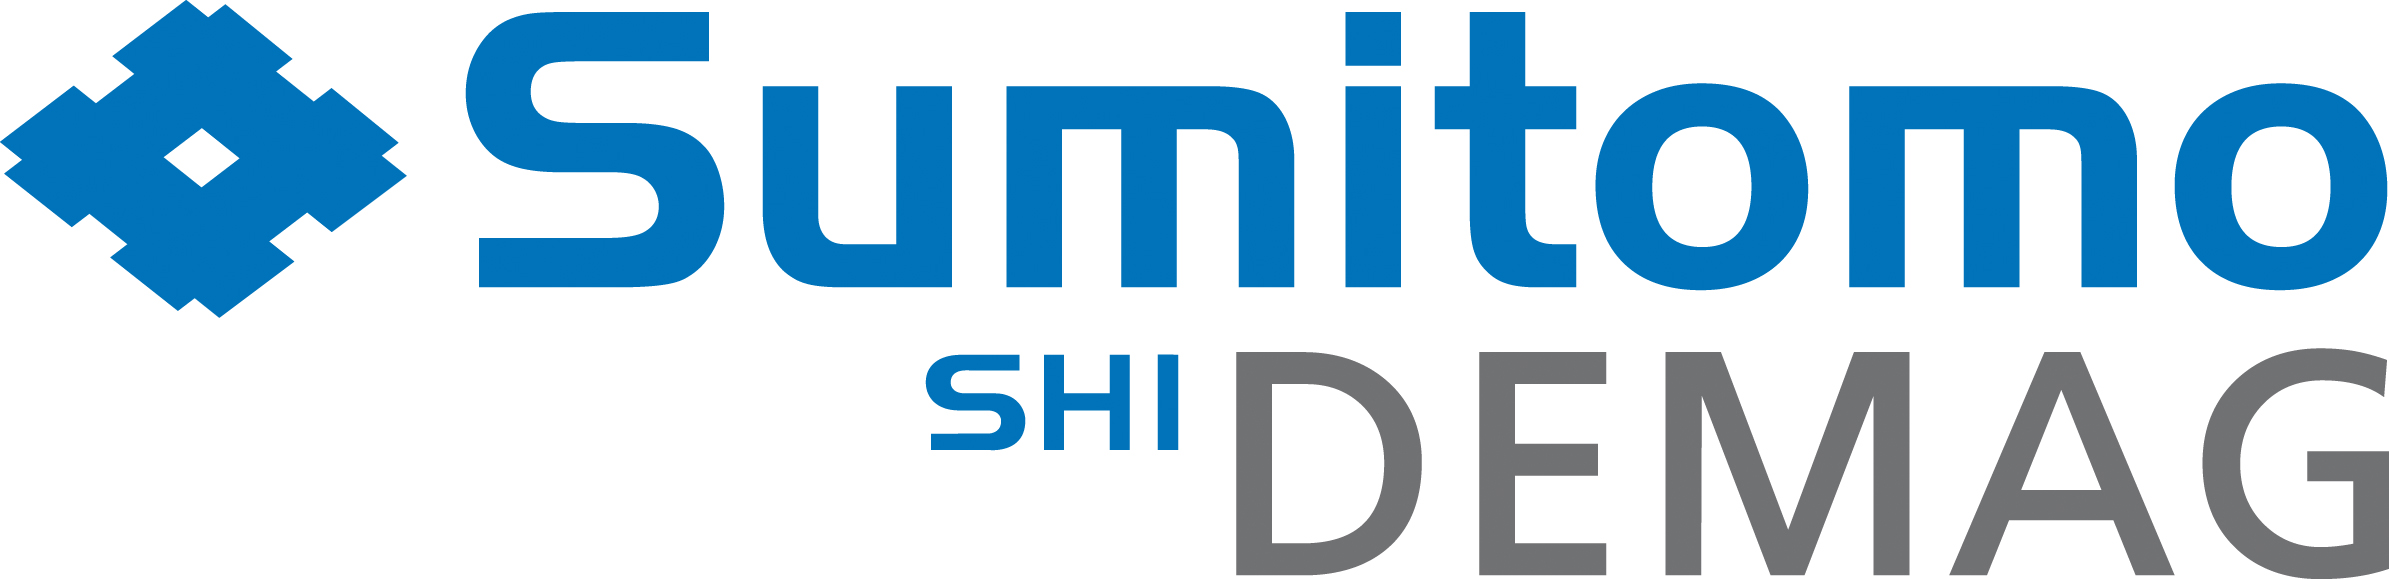 Sumitomo (SHI) Demag